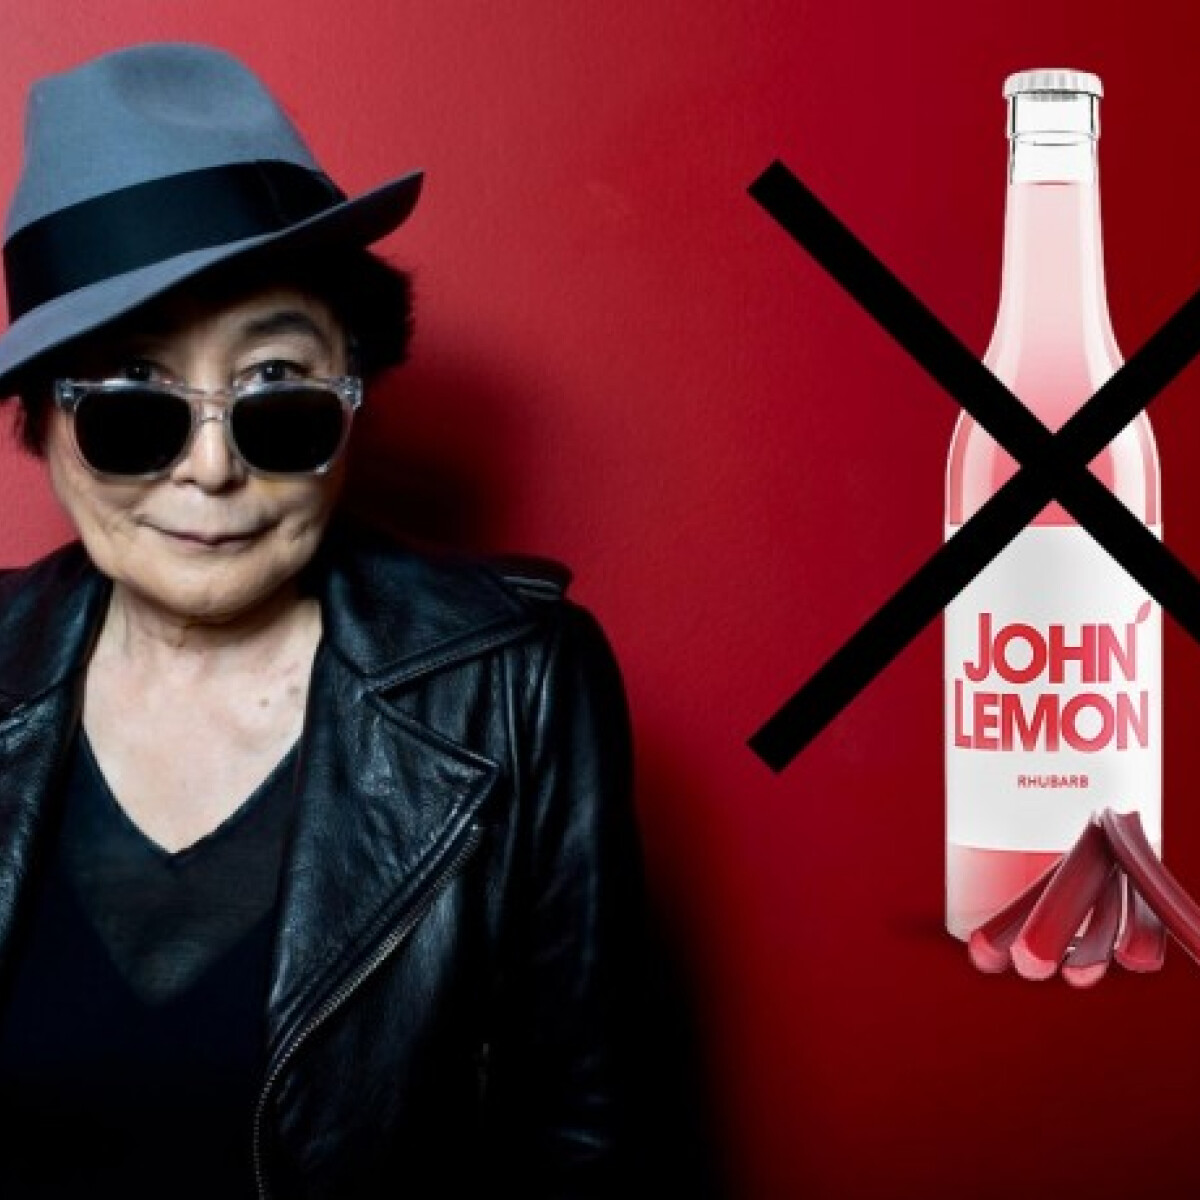 Yoko Ono savanyú ábrázattal pereli az üdítőital-gyártót - Nincsen többé John Lemon szóda